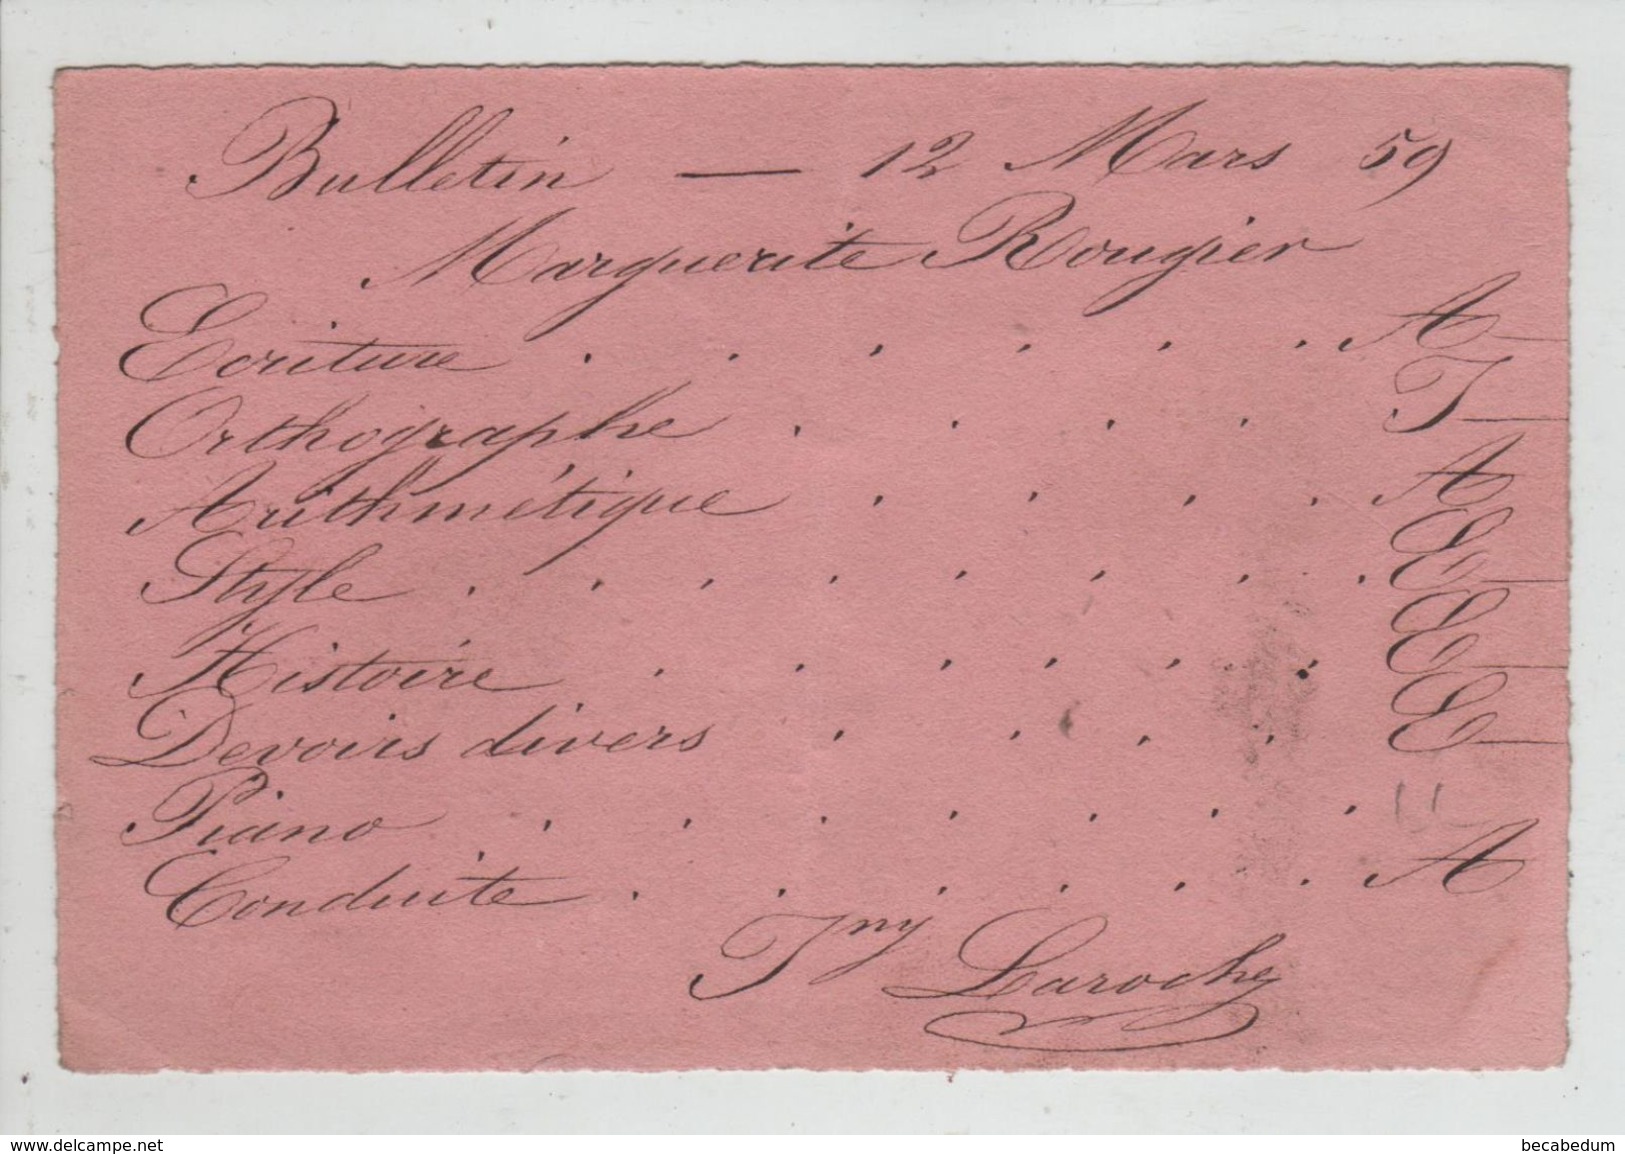 Bulletin Scolaire 1859 Rougier Laroche - Diploma & School Reports